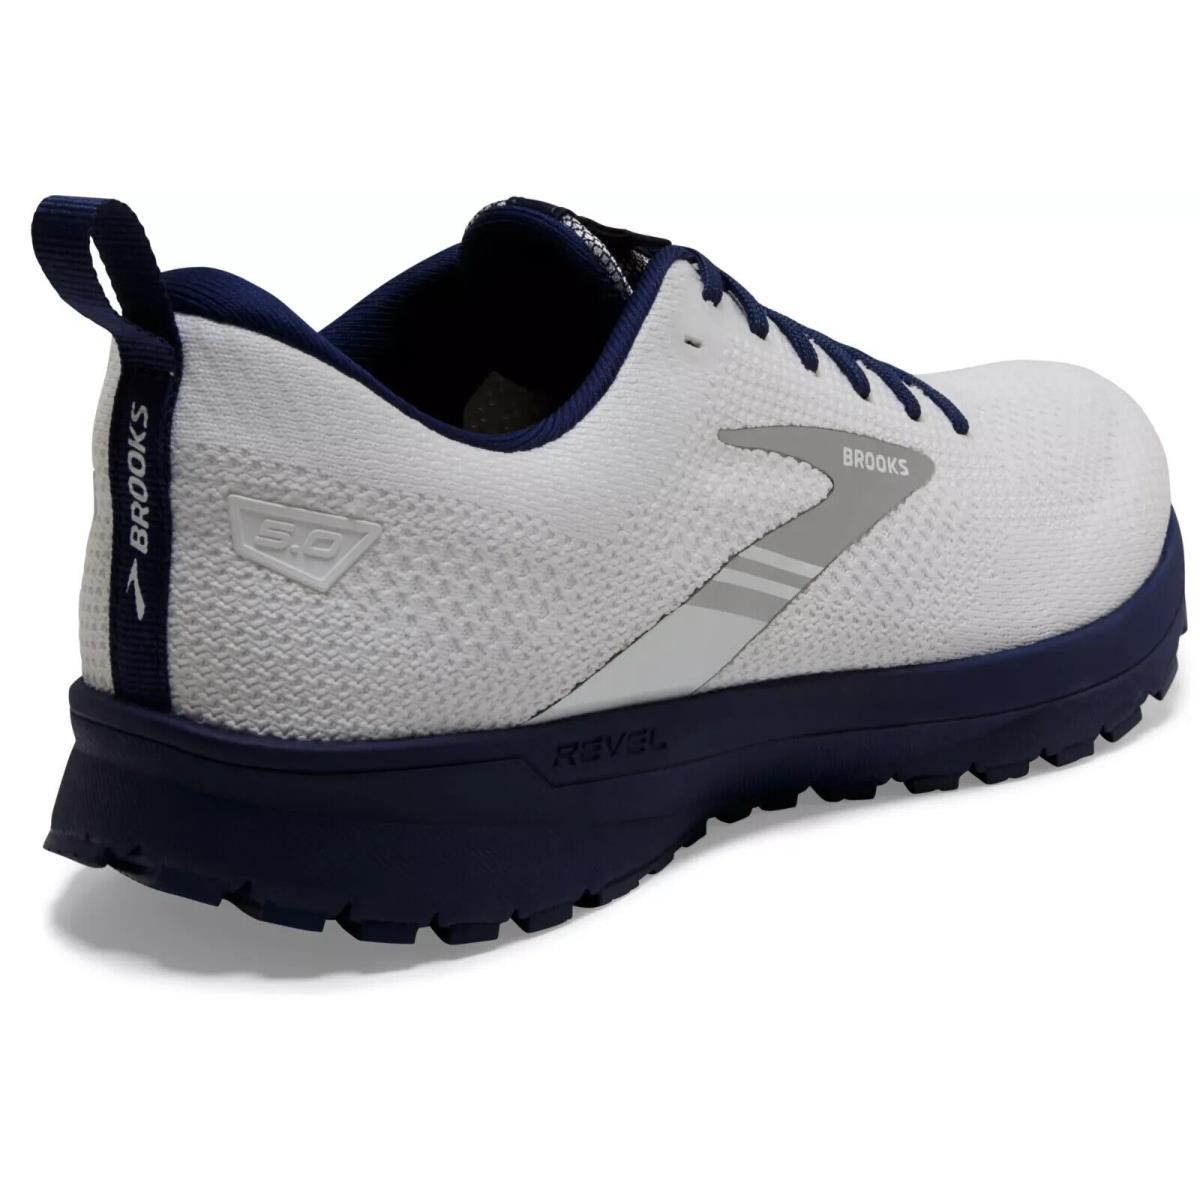 Brooks shoes Revel - White/Blue 1